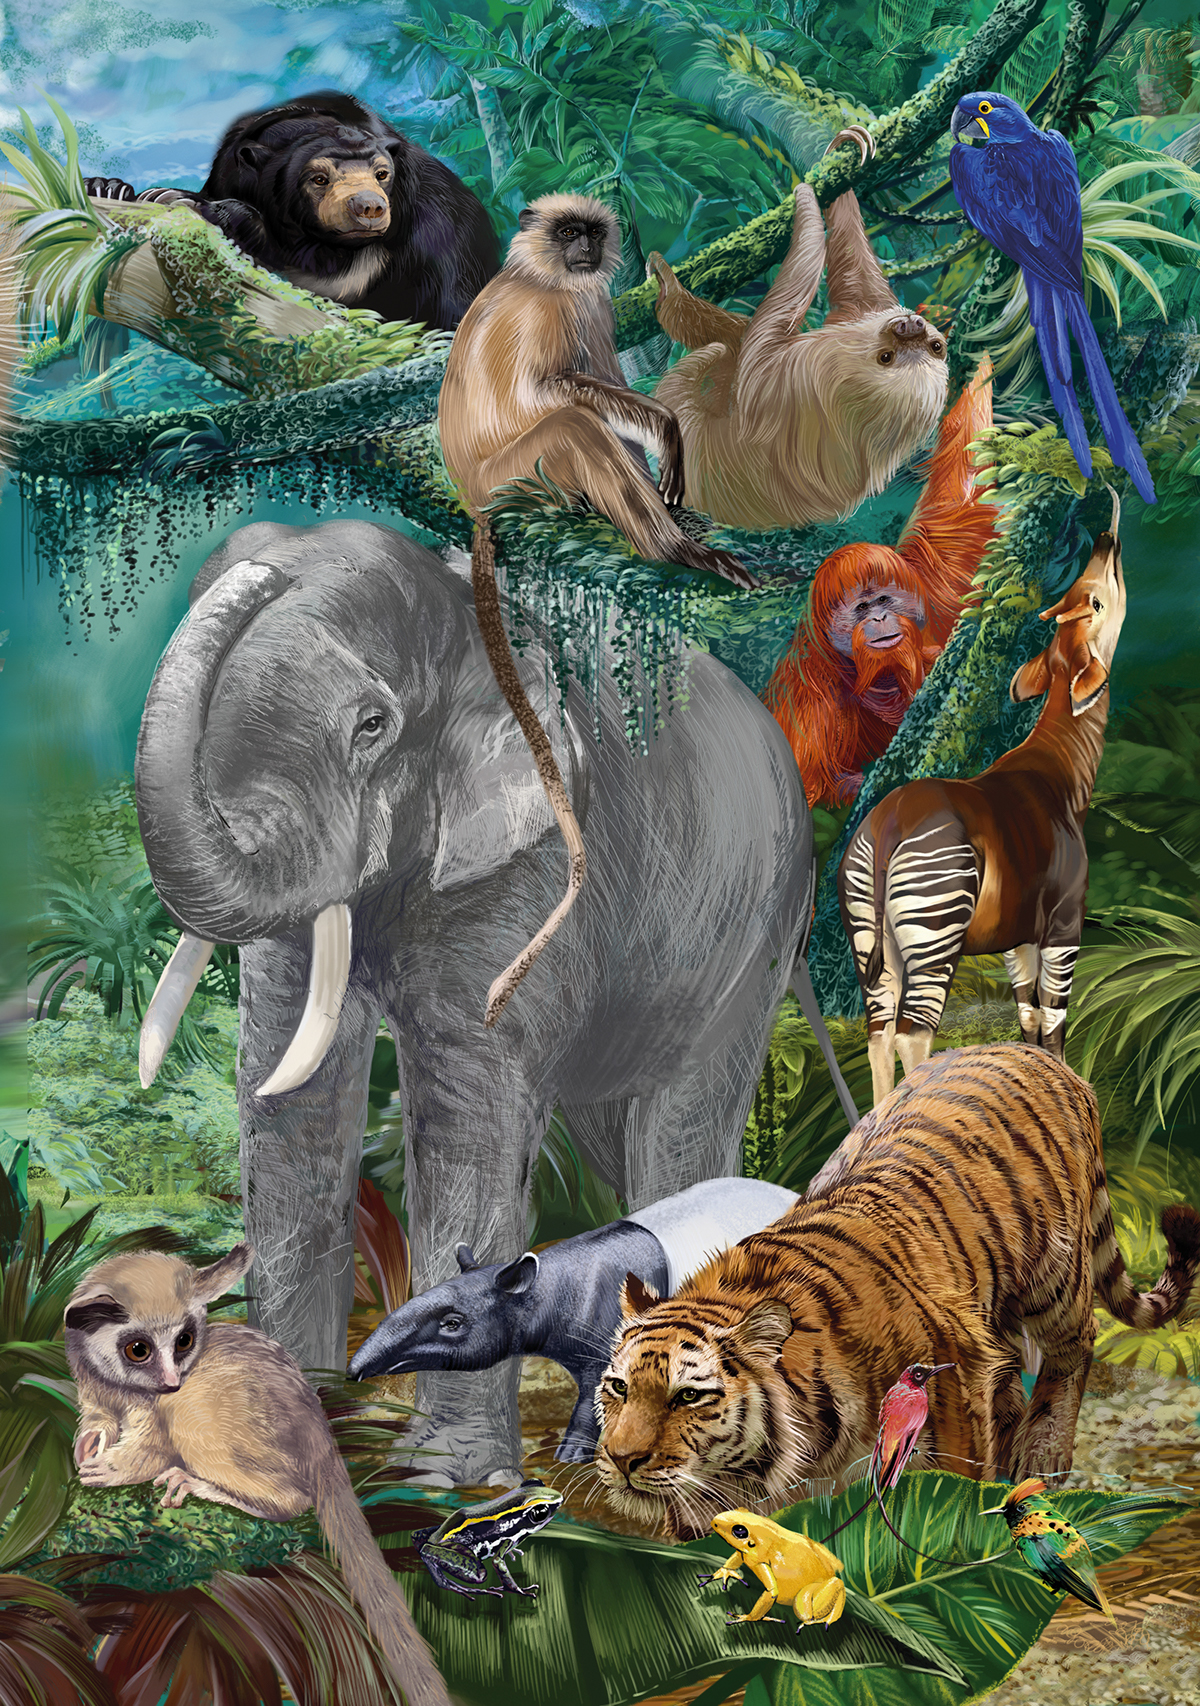 Amazing animals of the worlds (encyclopedia)) on Behance